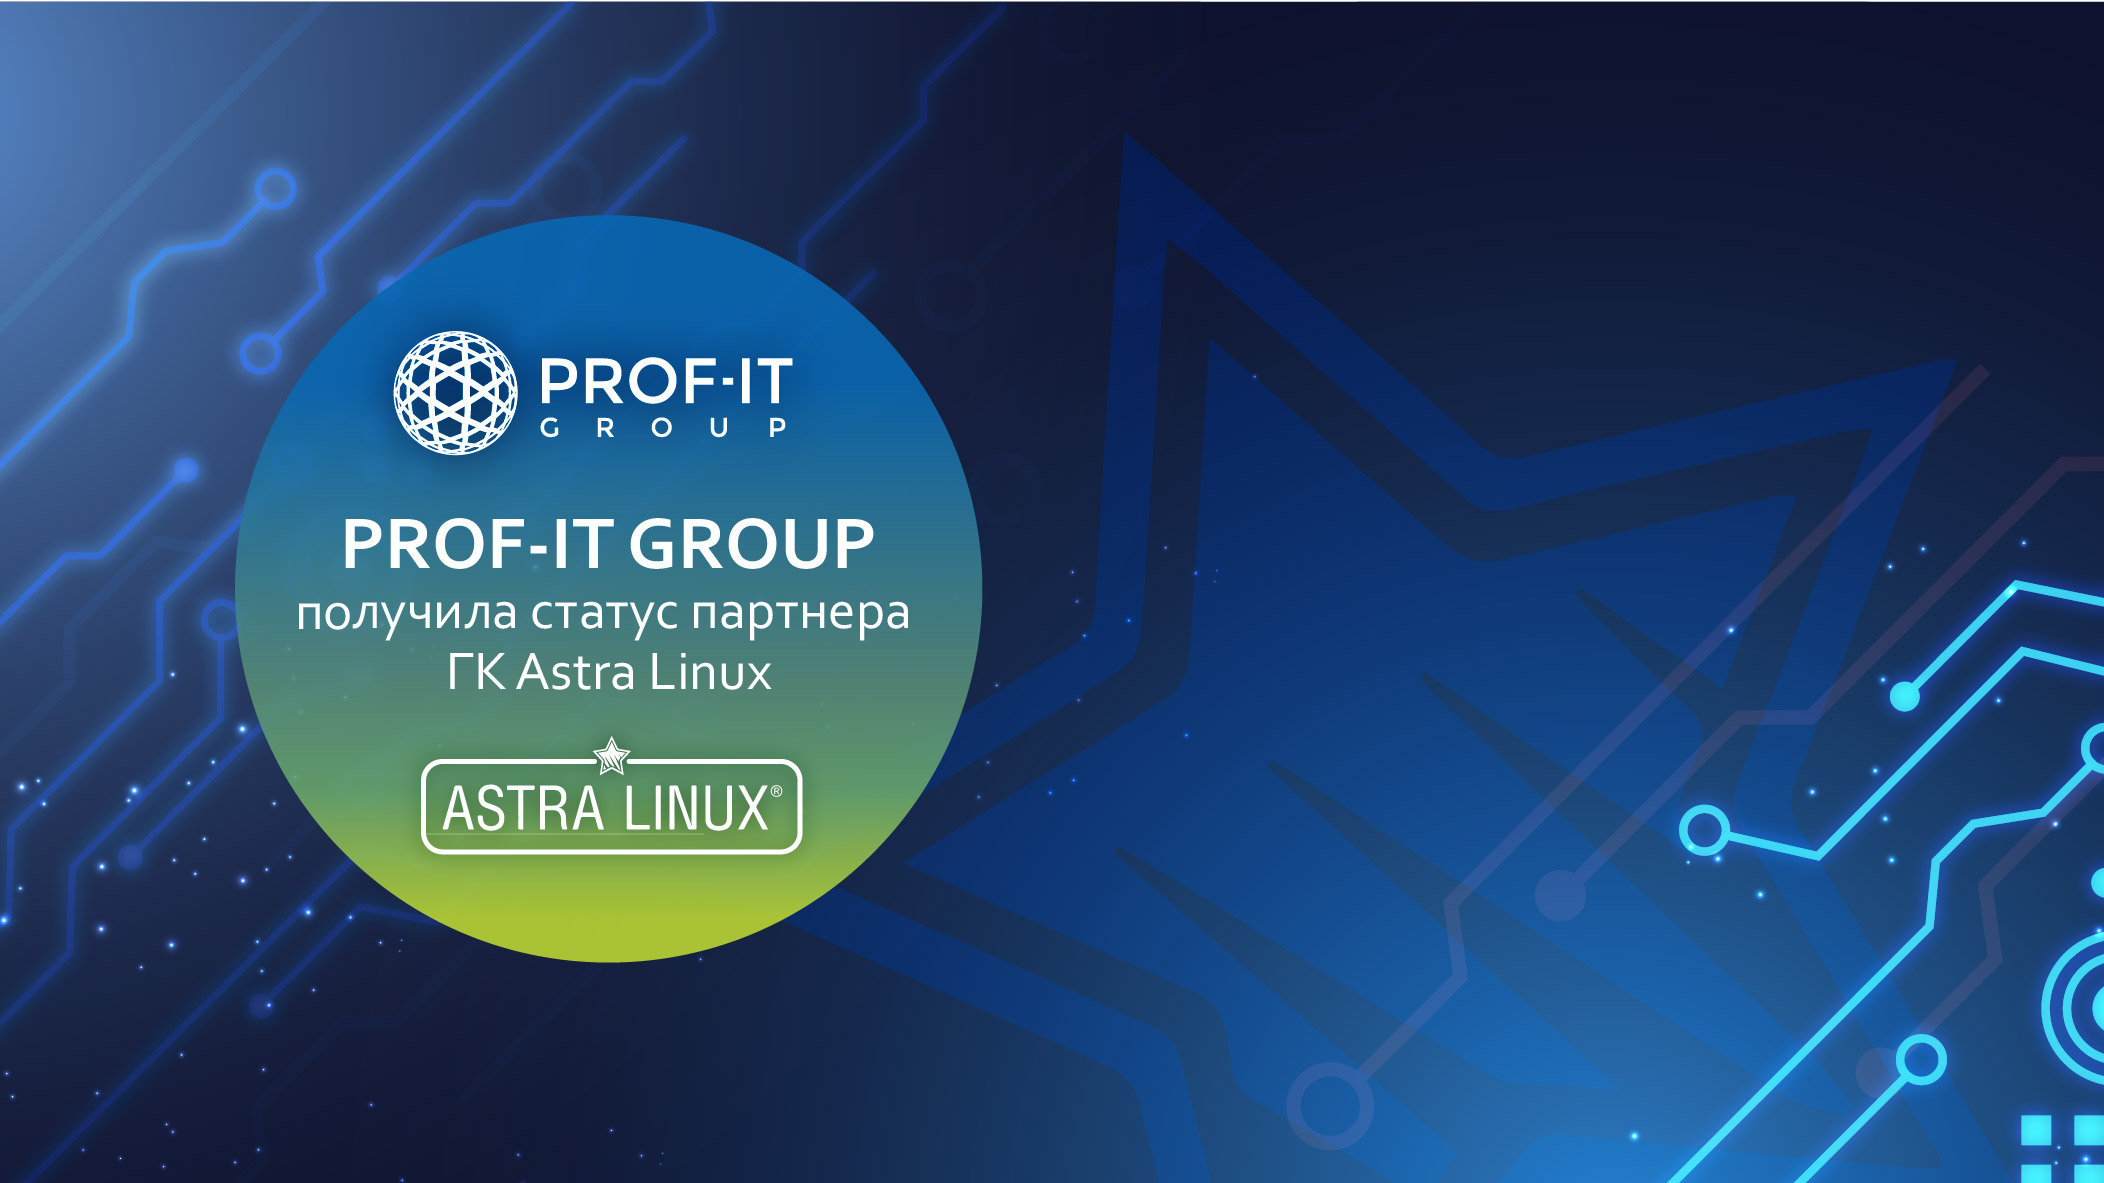 PROF-IT GROUP получила статус партнера ГК Astra Linux